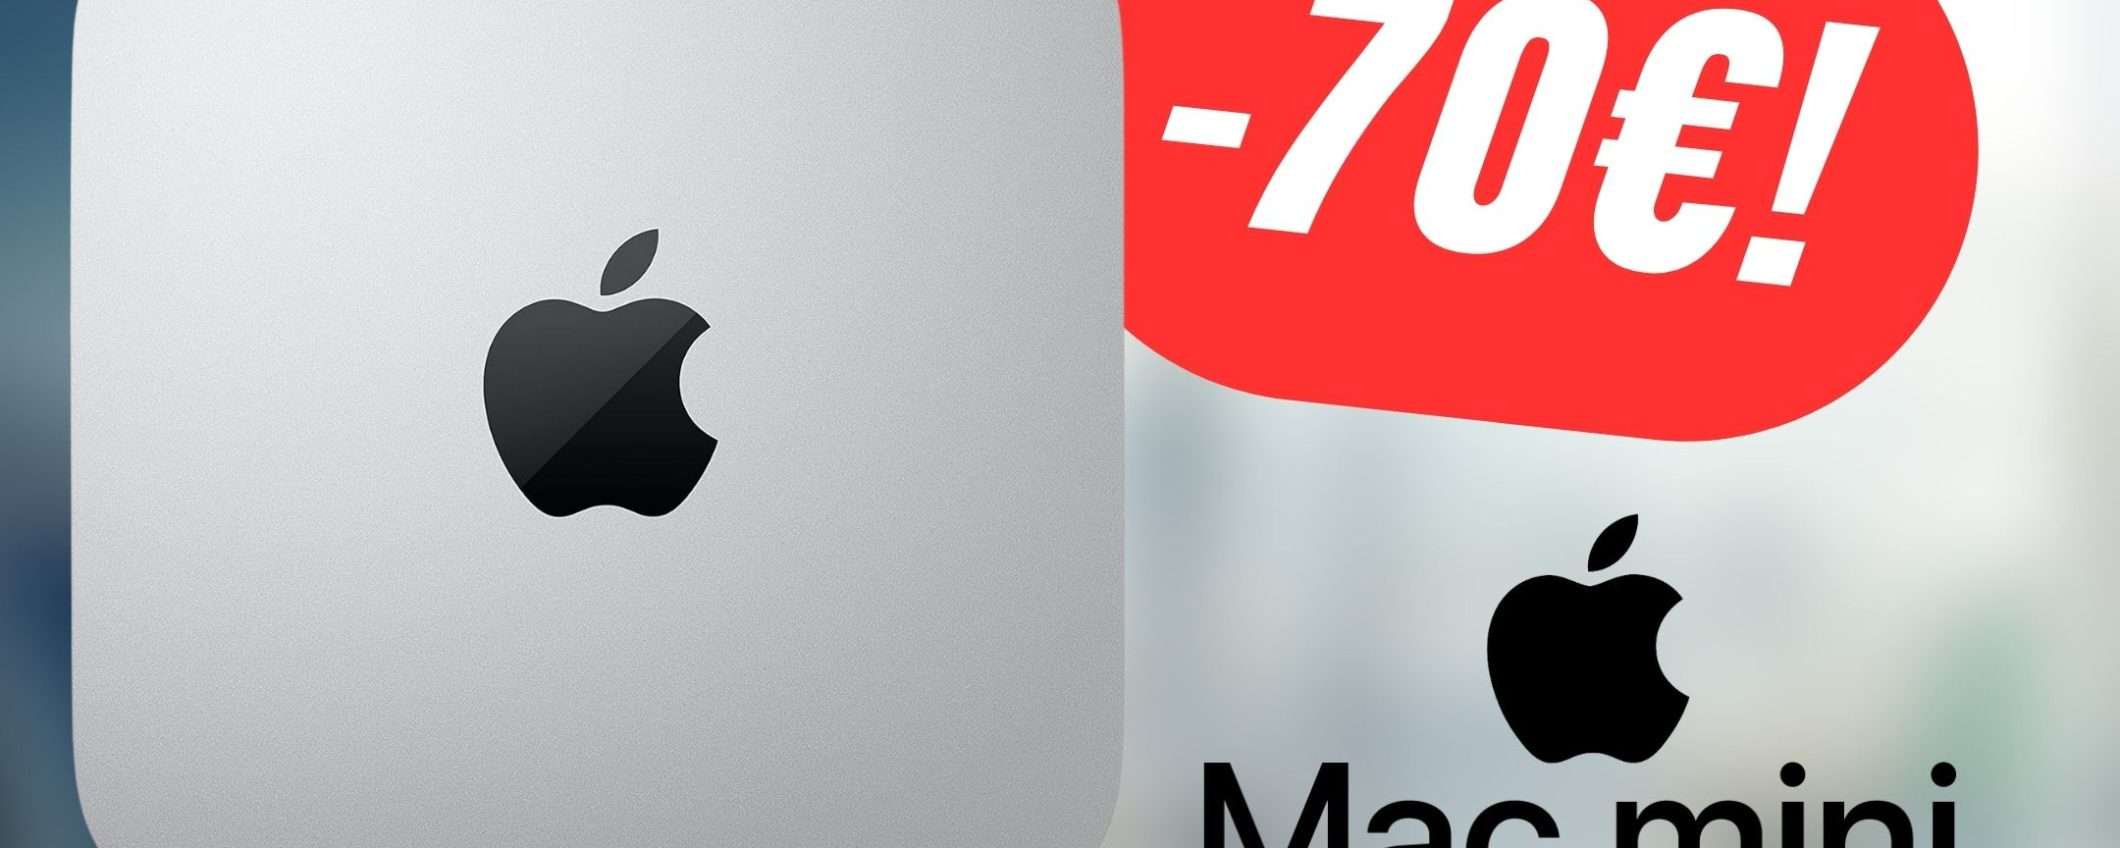 Apple Mac Mini è in SCONTO su Amazon!